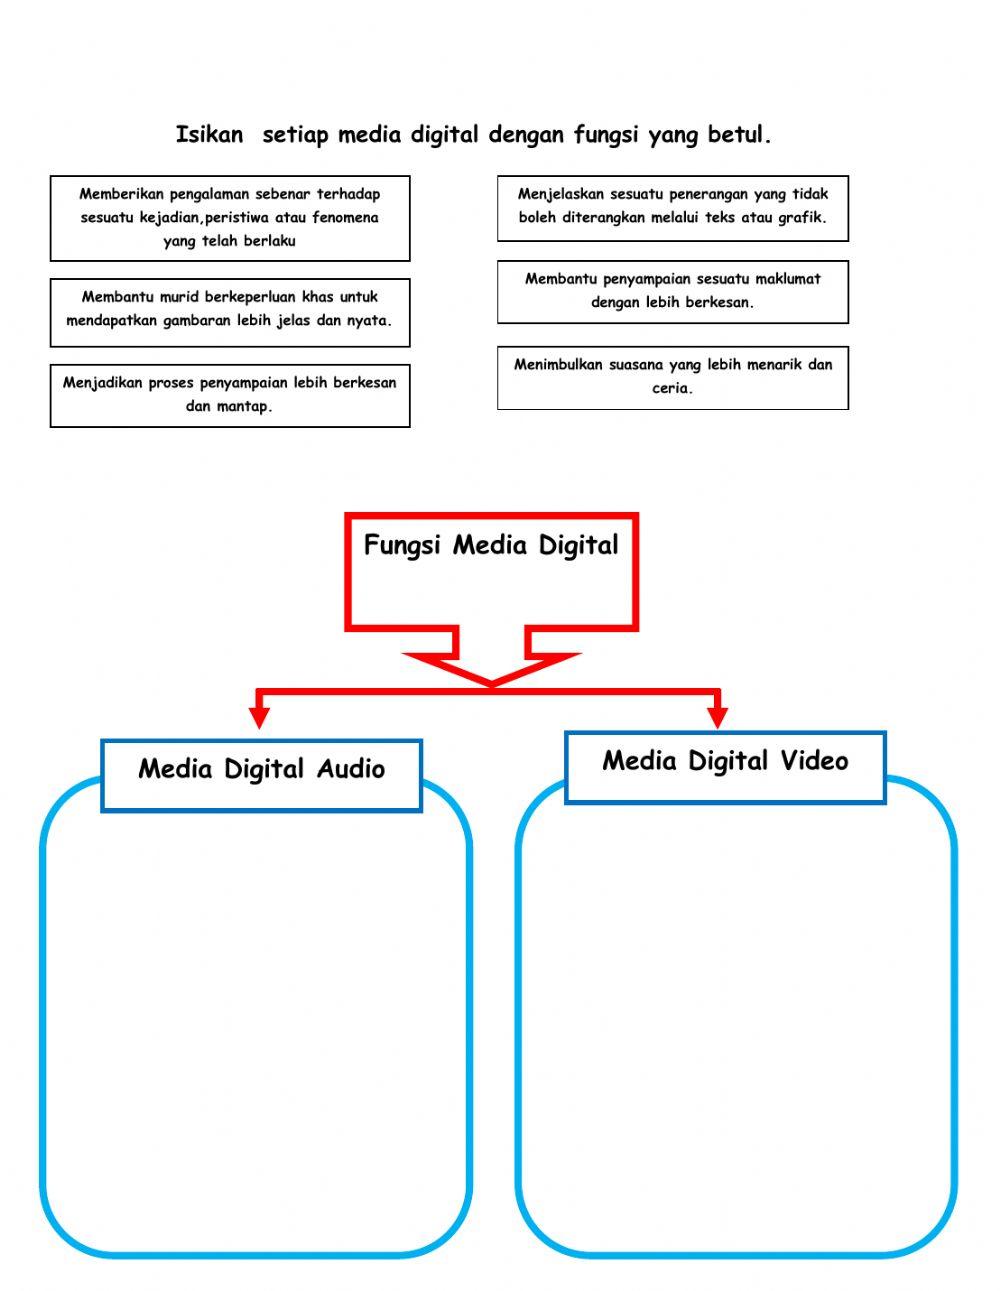 Teknologi maklumat & komunikasi - definisi & fungsi media dgital audio & video